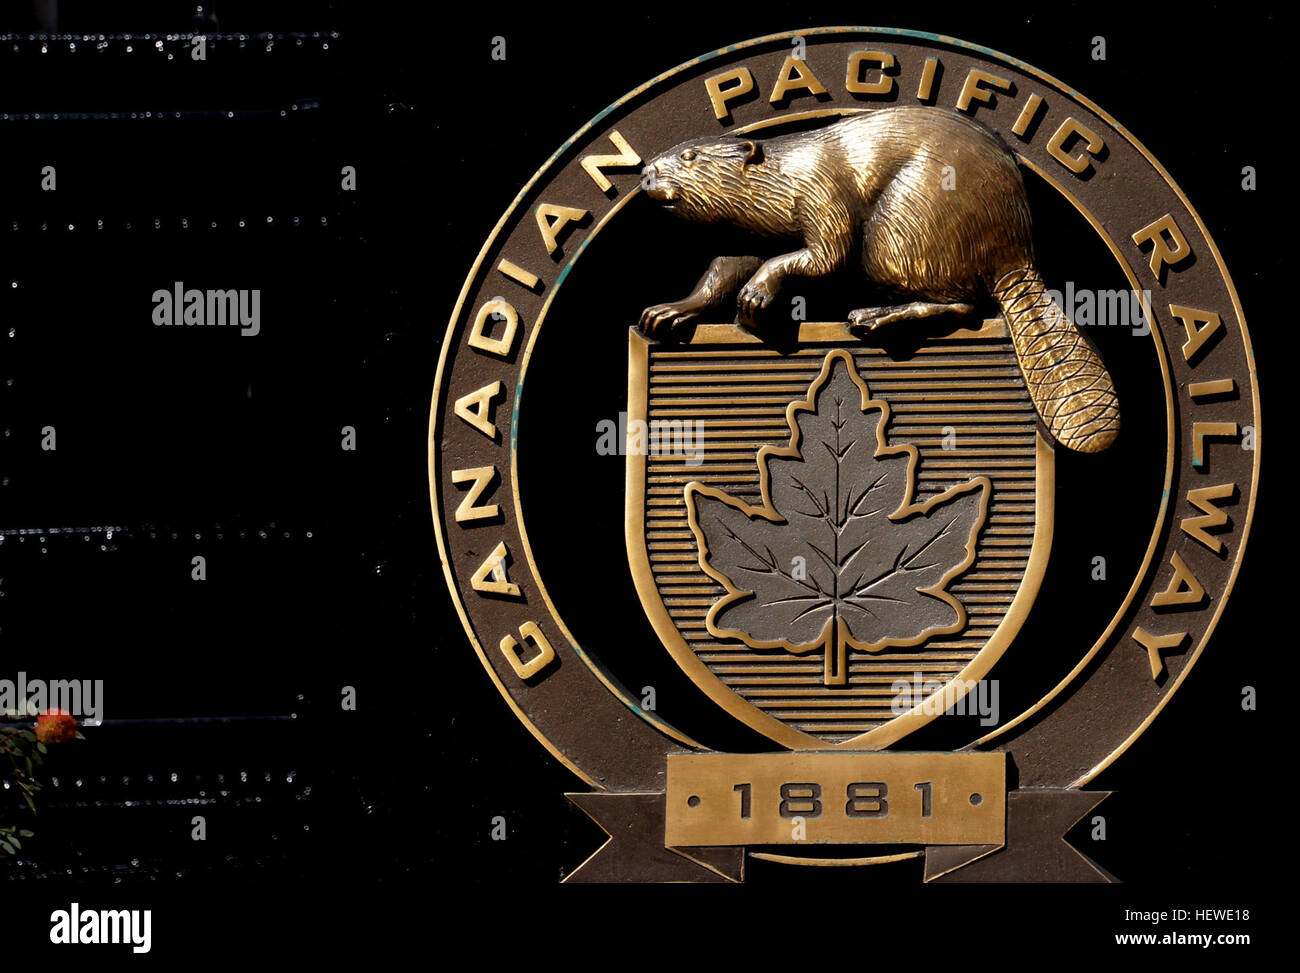 Die Canadian Pacific Railway, früher auch bekannt als CP Rail zwischen 1968 und 1996, ist eine historische kanadische Klasse ich Schiene Träger 1881 gegründet und nun von der Canadian Pacific Railway Limited betrieben, Stockfoto